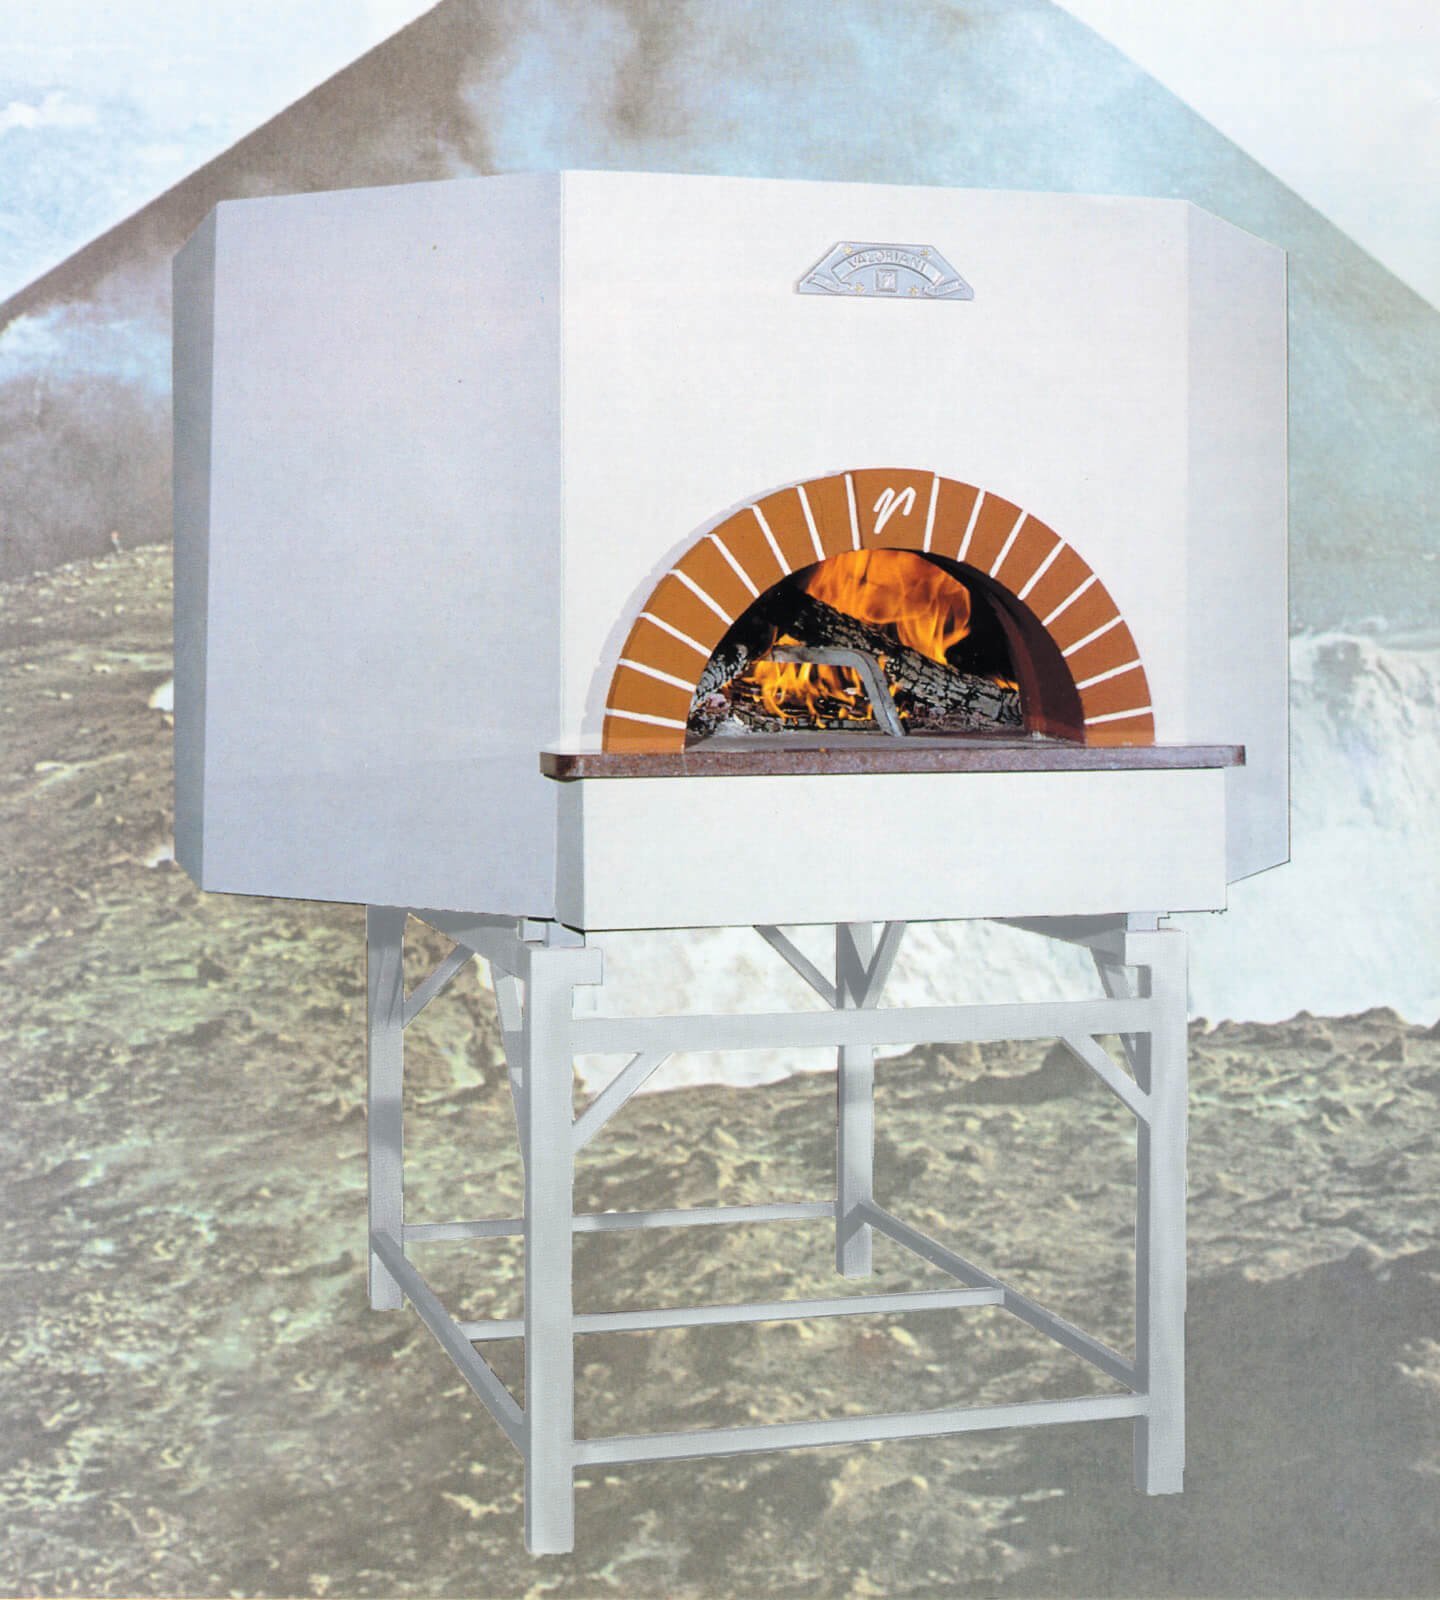 Pizzaofen Gastro: Valoriani Vesuvius OT, Holz und Gas, 100cm Durchmesser